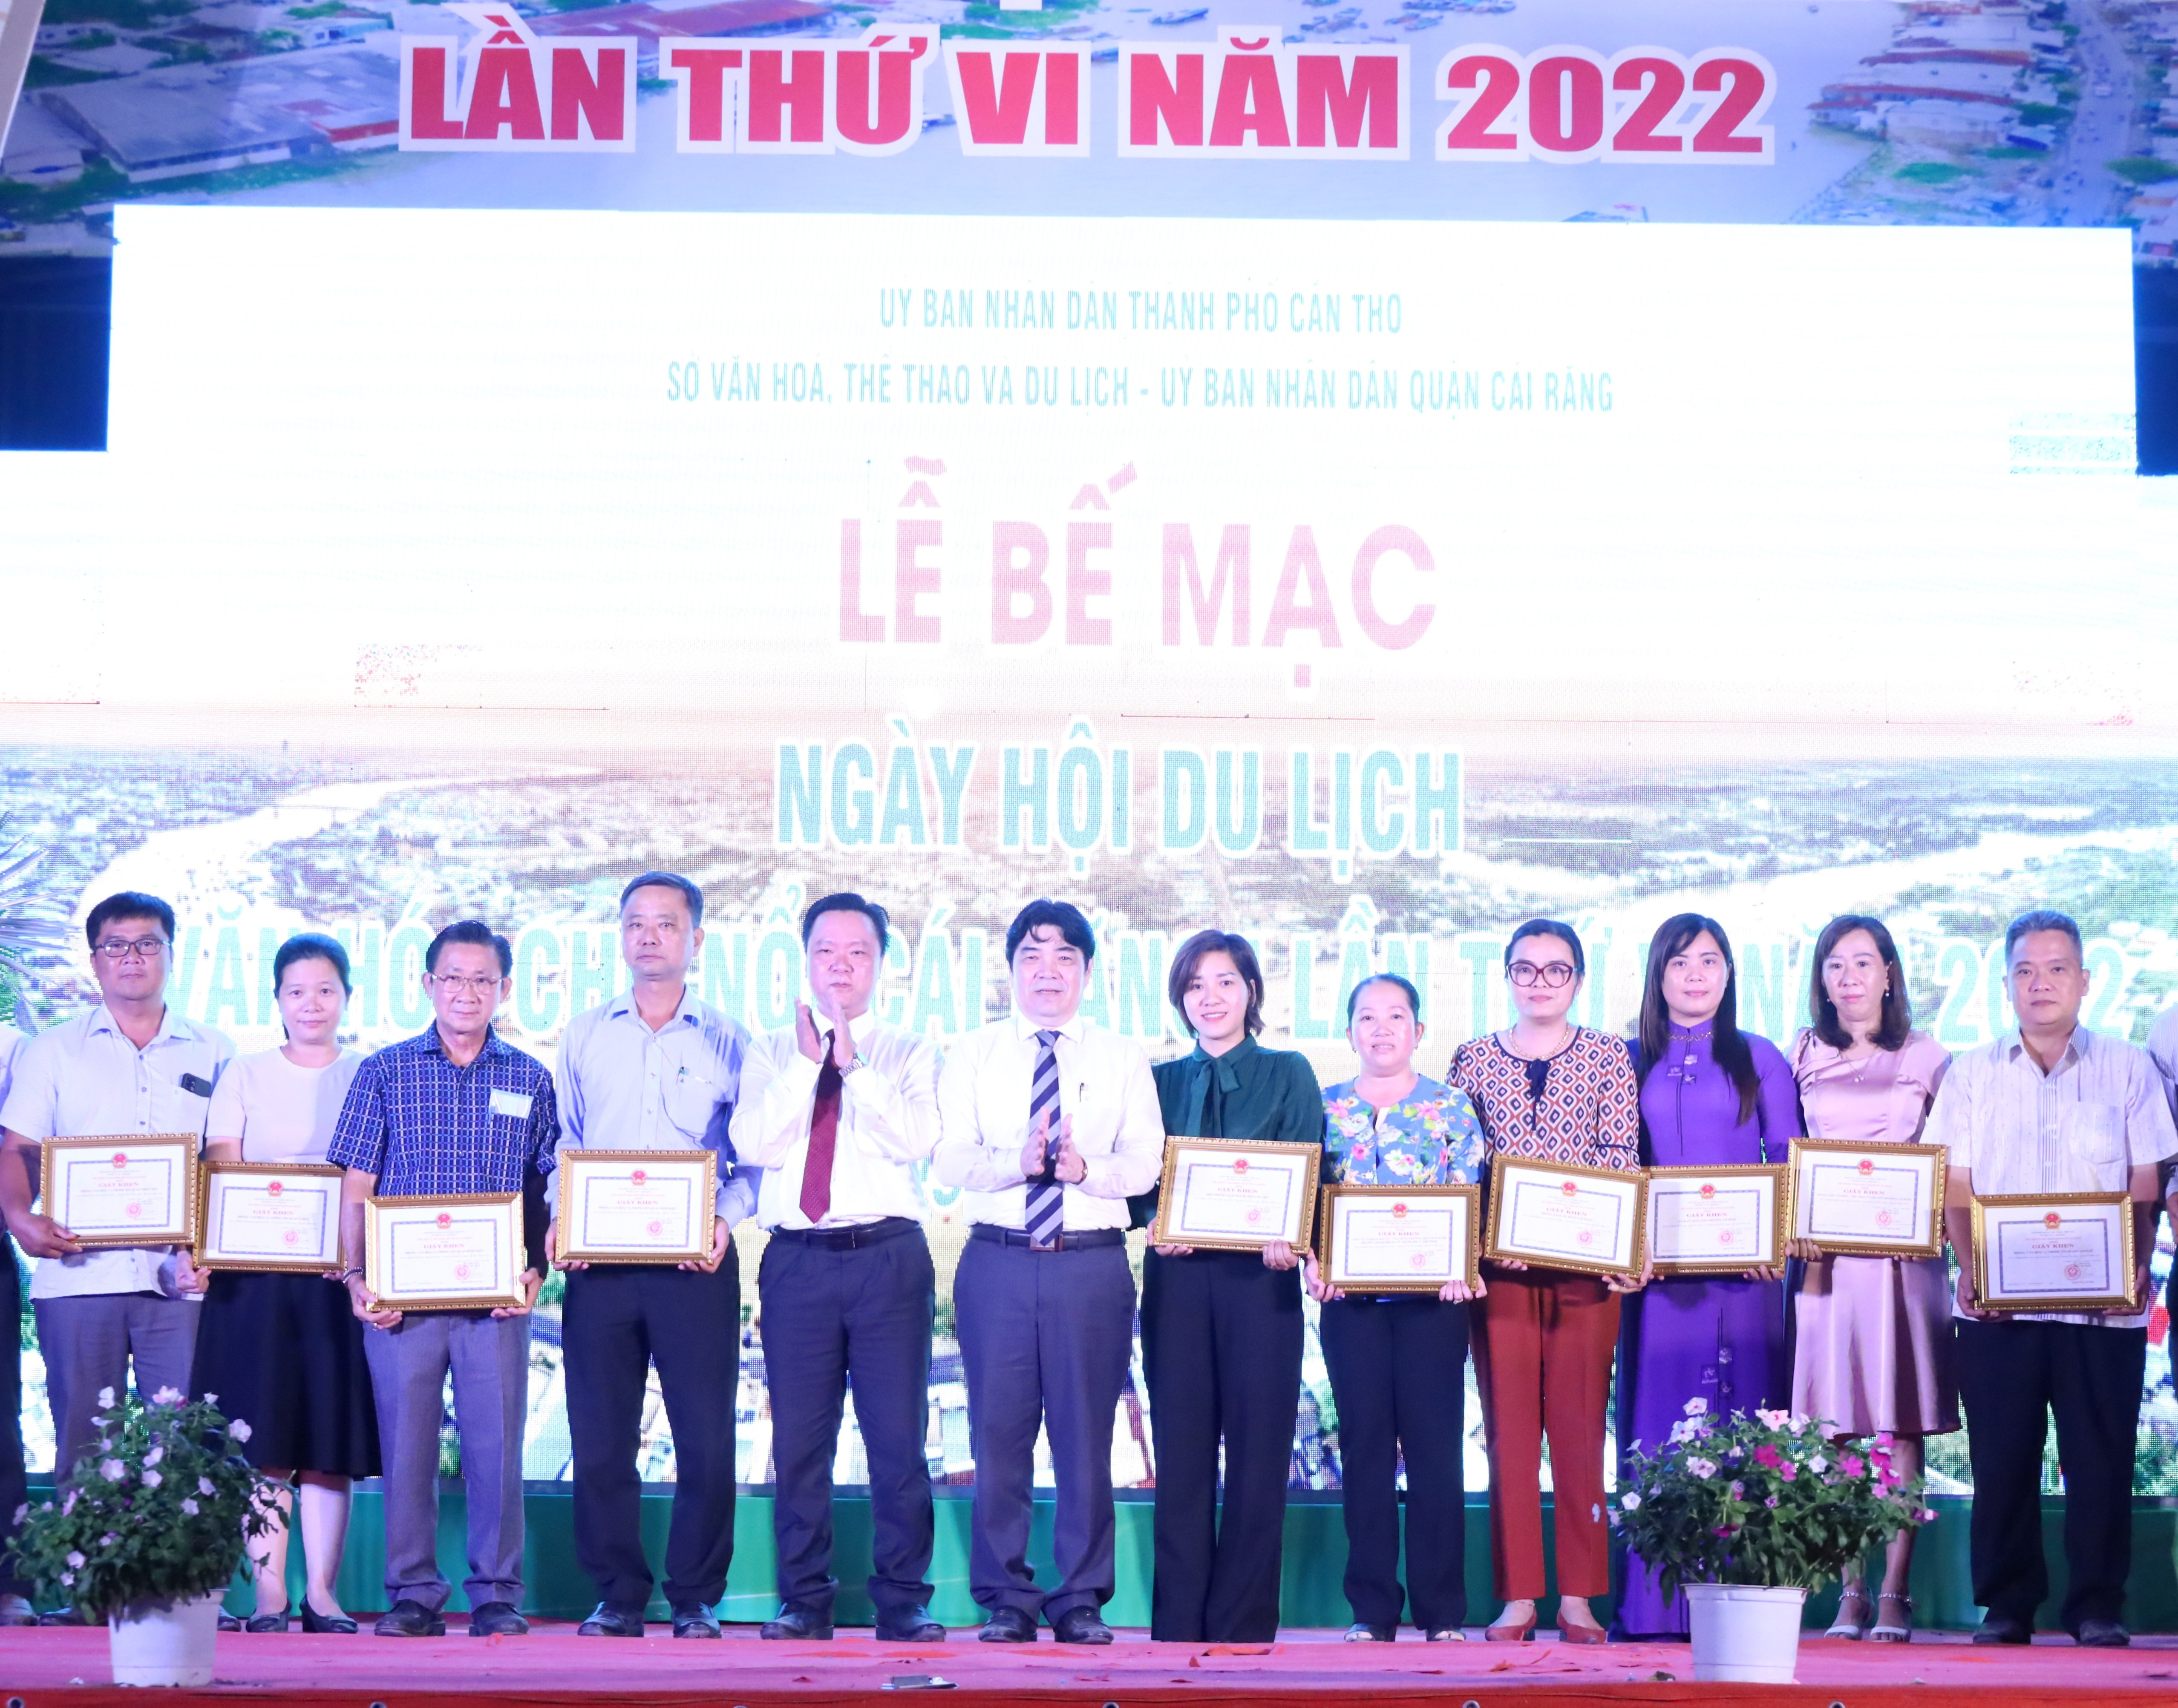 Ông Nguyễn Văn Sử - Bí thư Quận ủy Cái Răng và ông Nguyễn Quốc Cường - Chủ tịch UBND quận Cái Răng trao tặng giấy khen cho các tập thể, cá nhân đạt thành tích xuất sắc tại ngày hội.